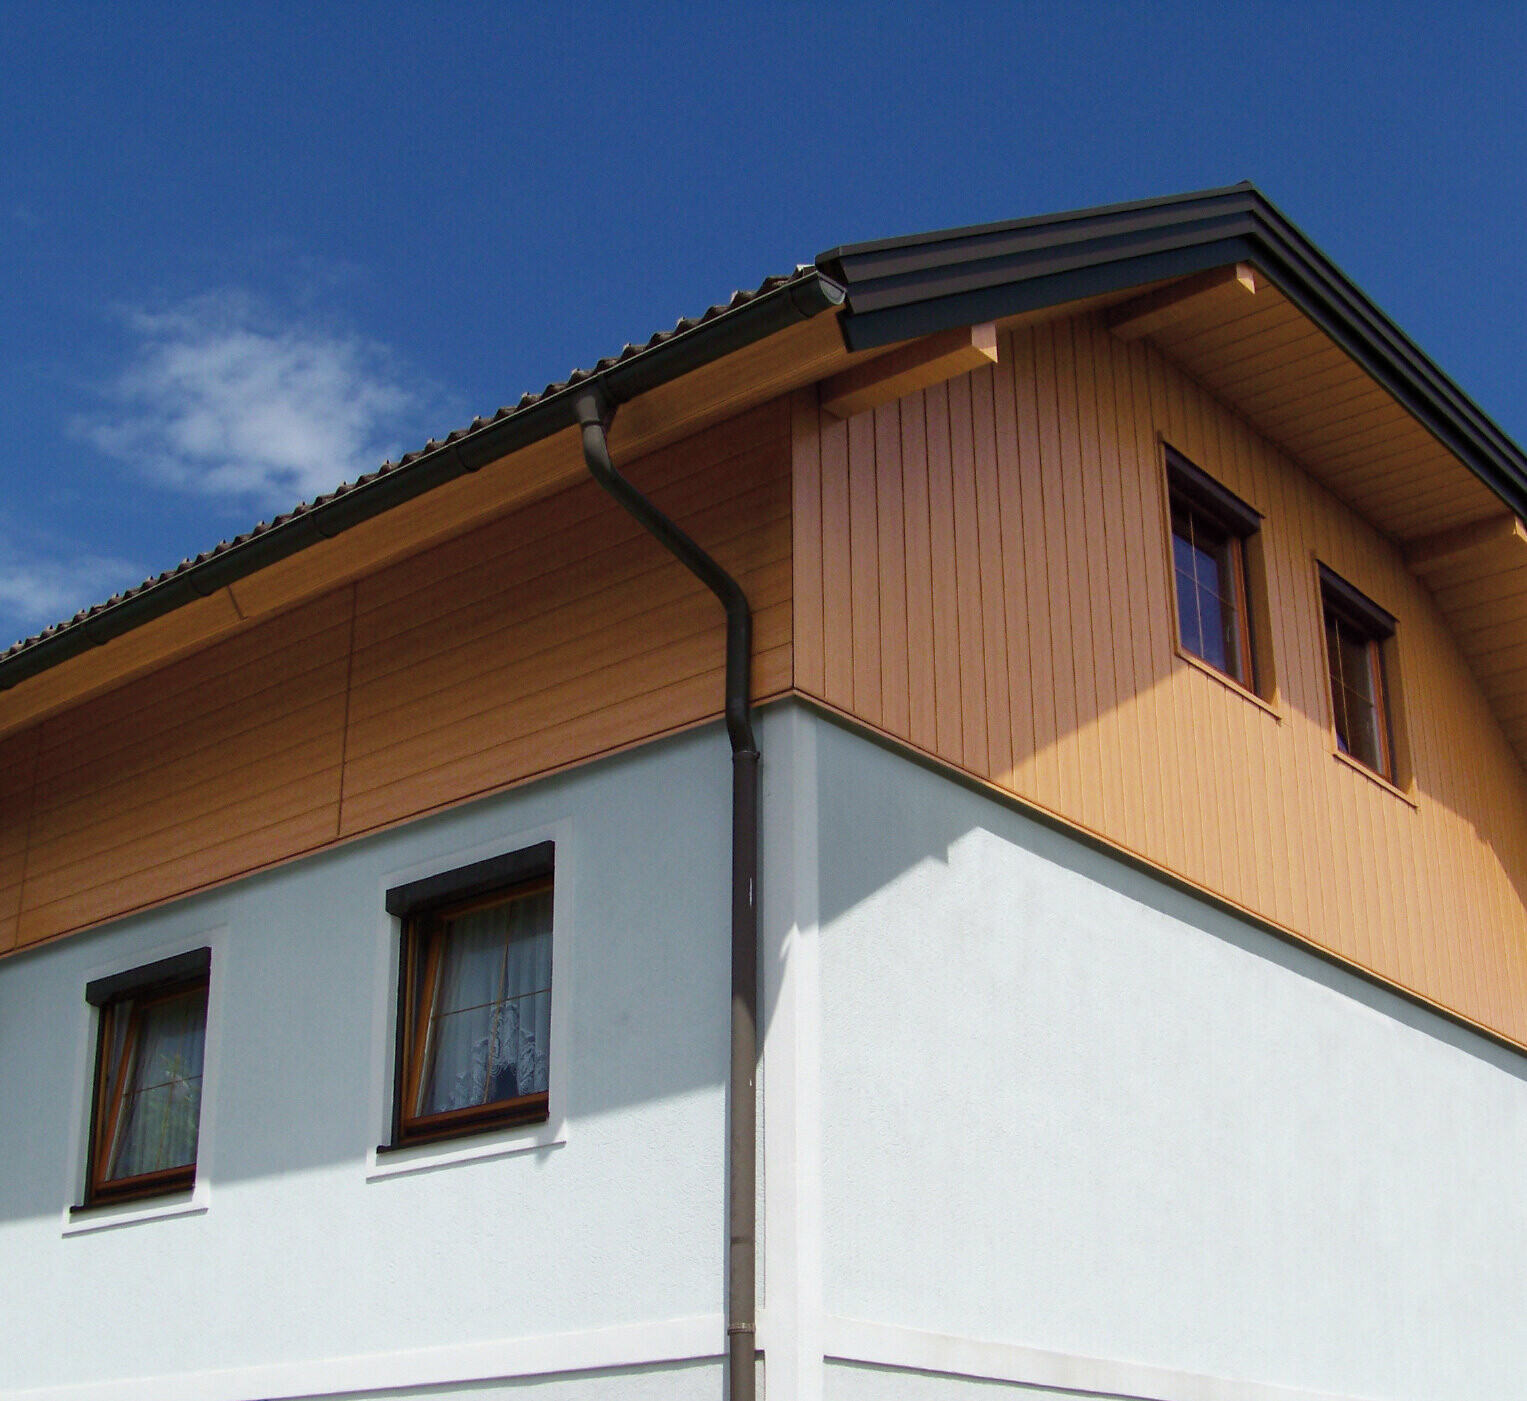 Veľký rodinný dom s polvalbovou strechou s obkladom štítu s fasádnymi panelmi PREFA Siding vo vzhľade dreva (farba prírodný dub)